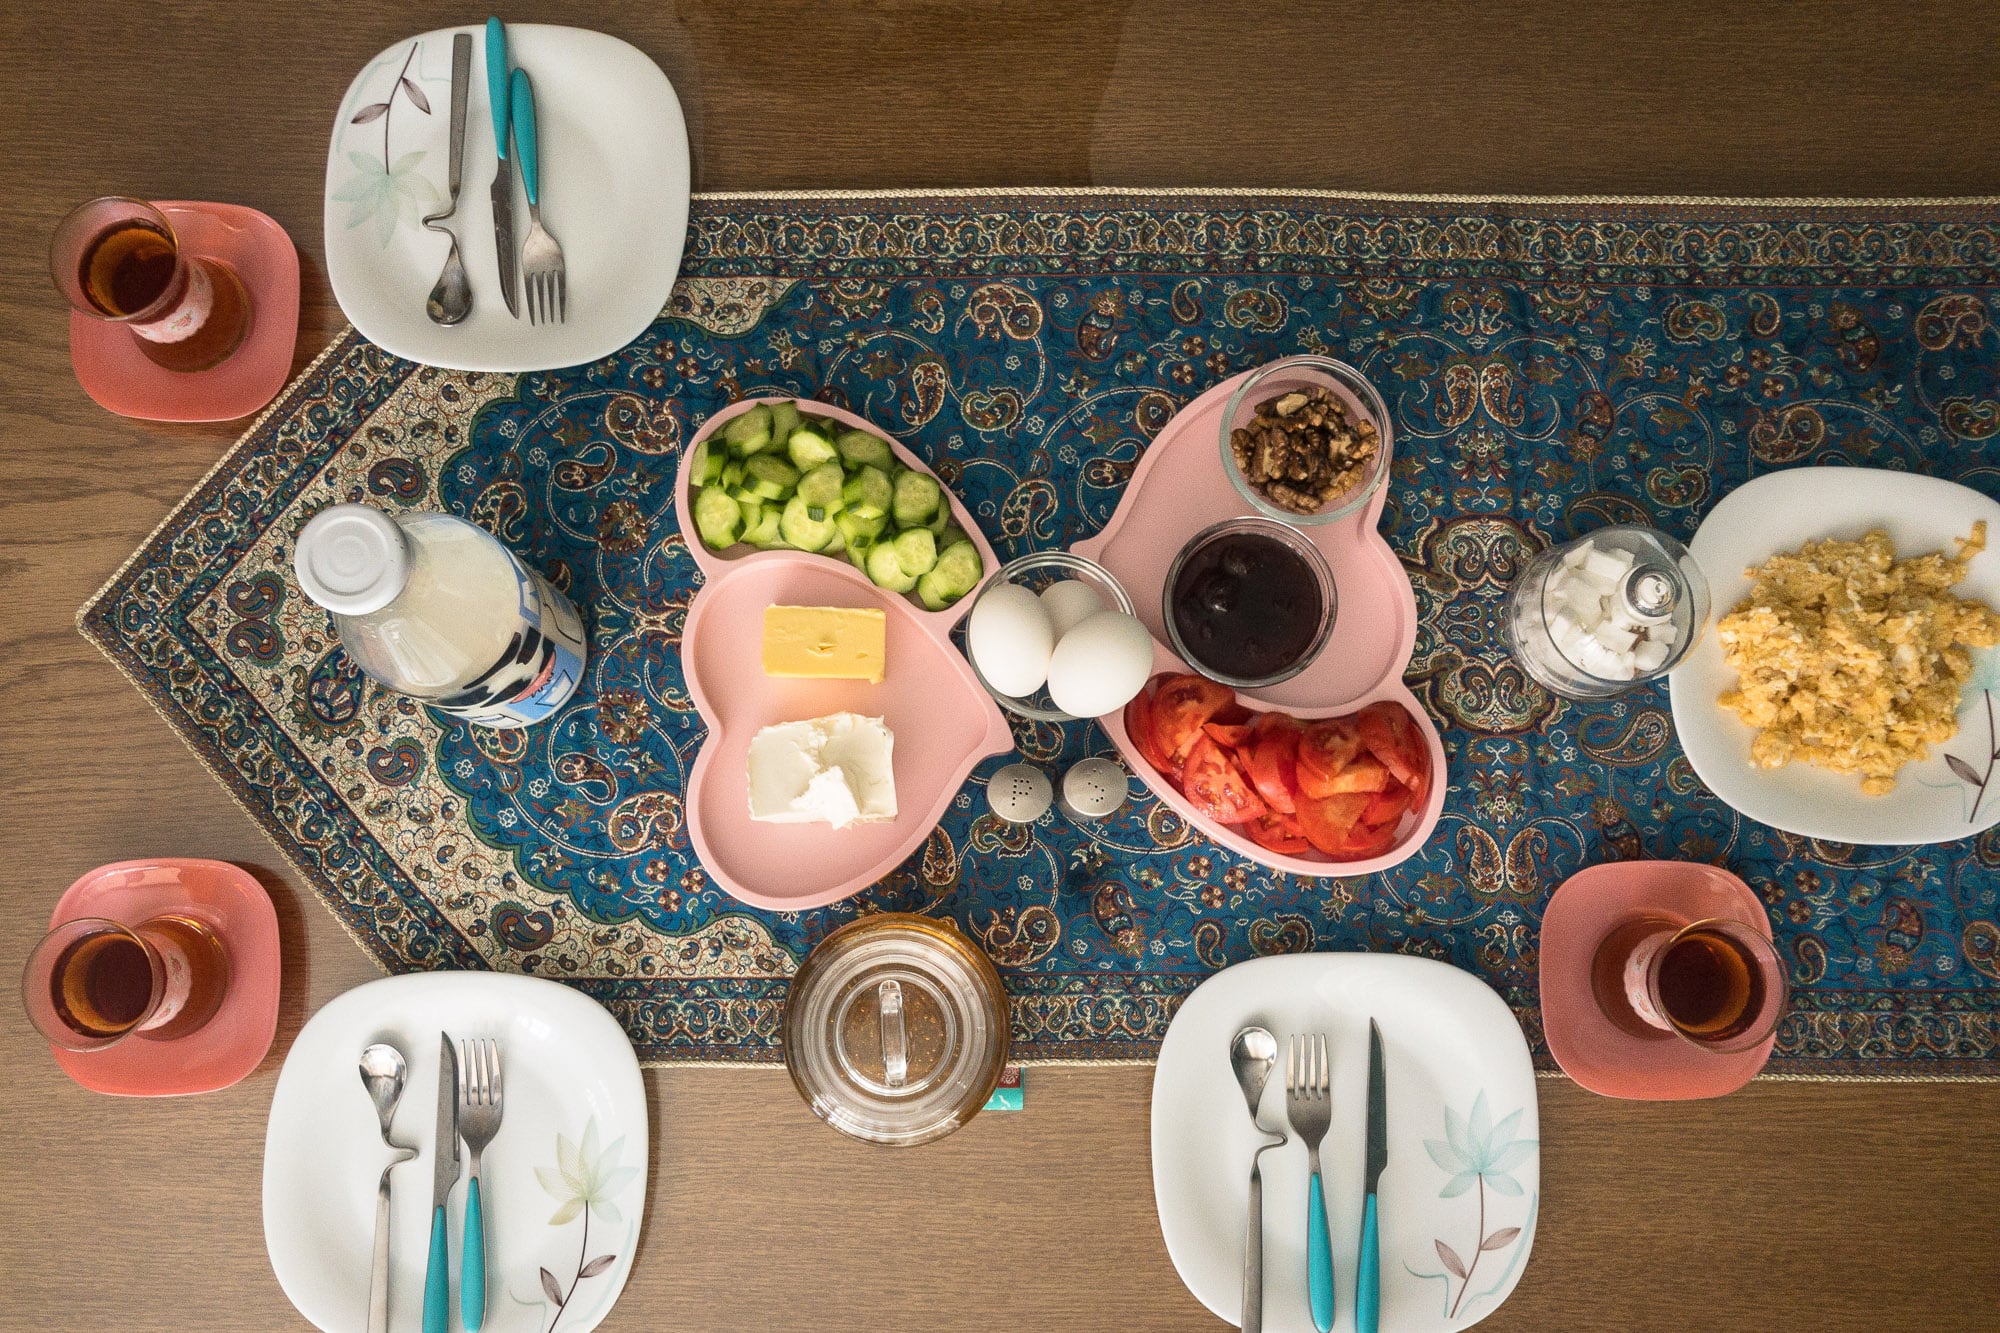 breakfast at Bahman’s place